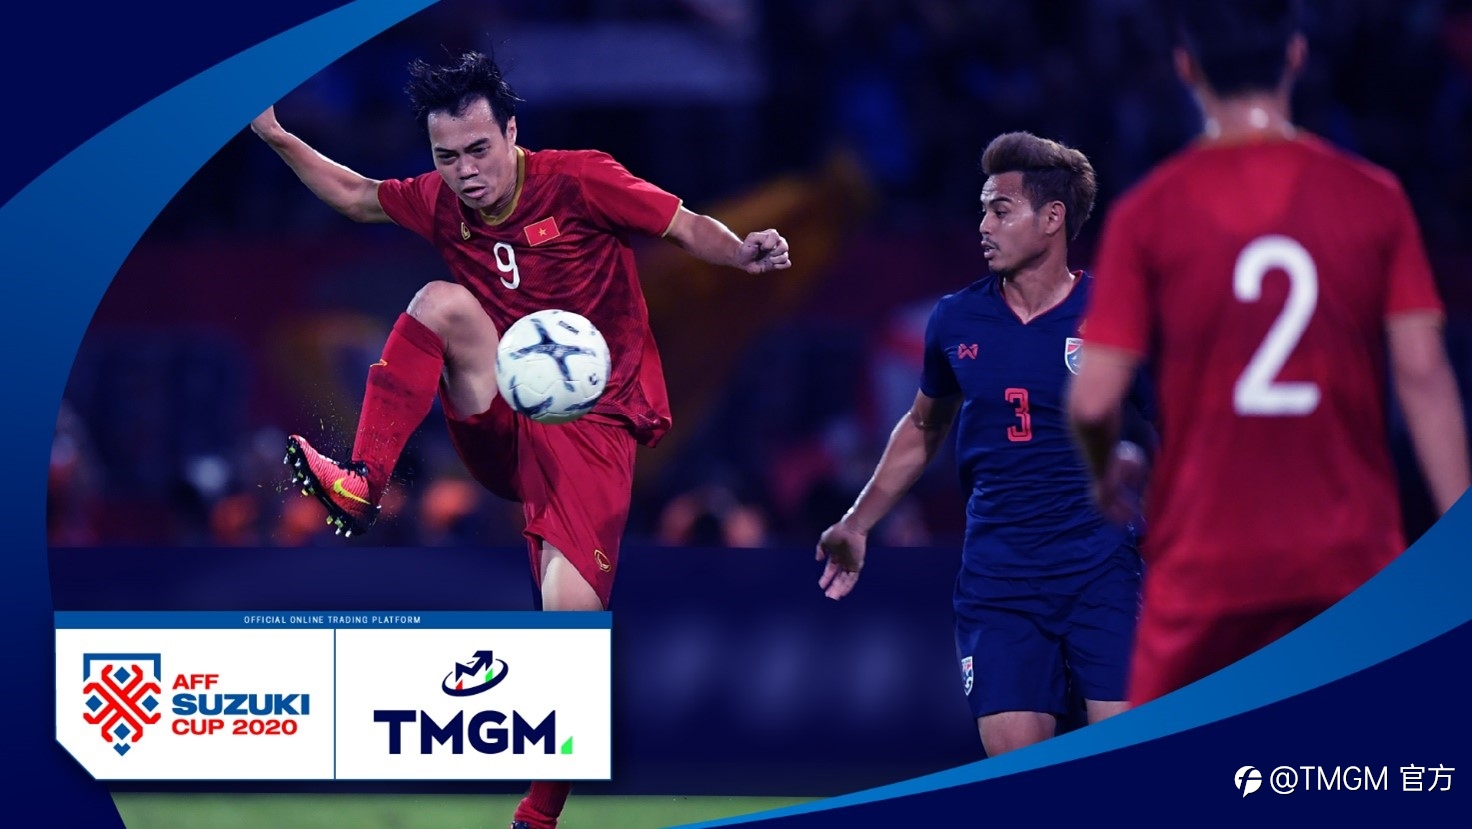 世界领先券商TMGM与重磅足球赛事AFF铃木杯锦标赛达成合作